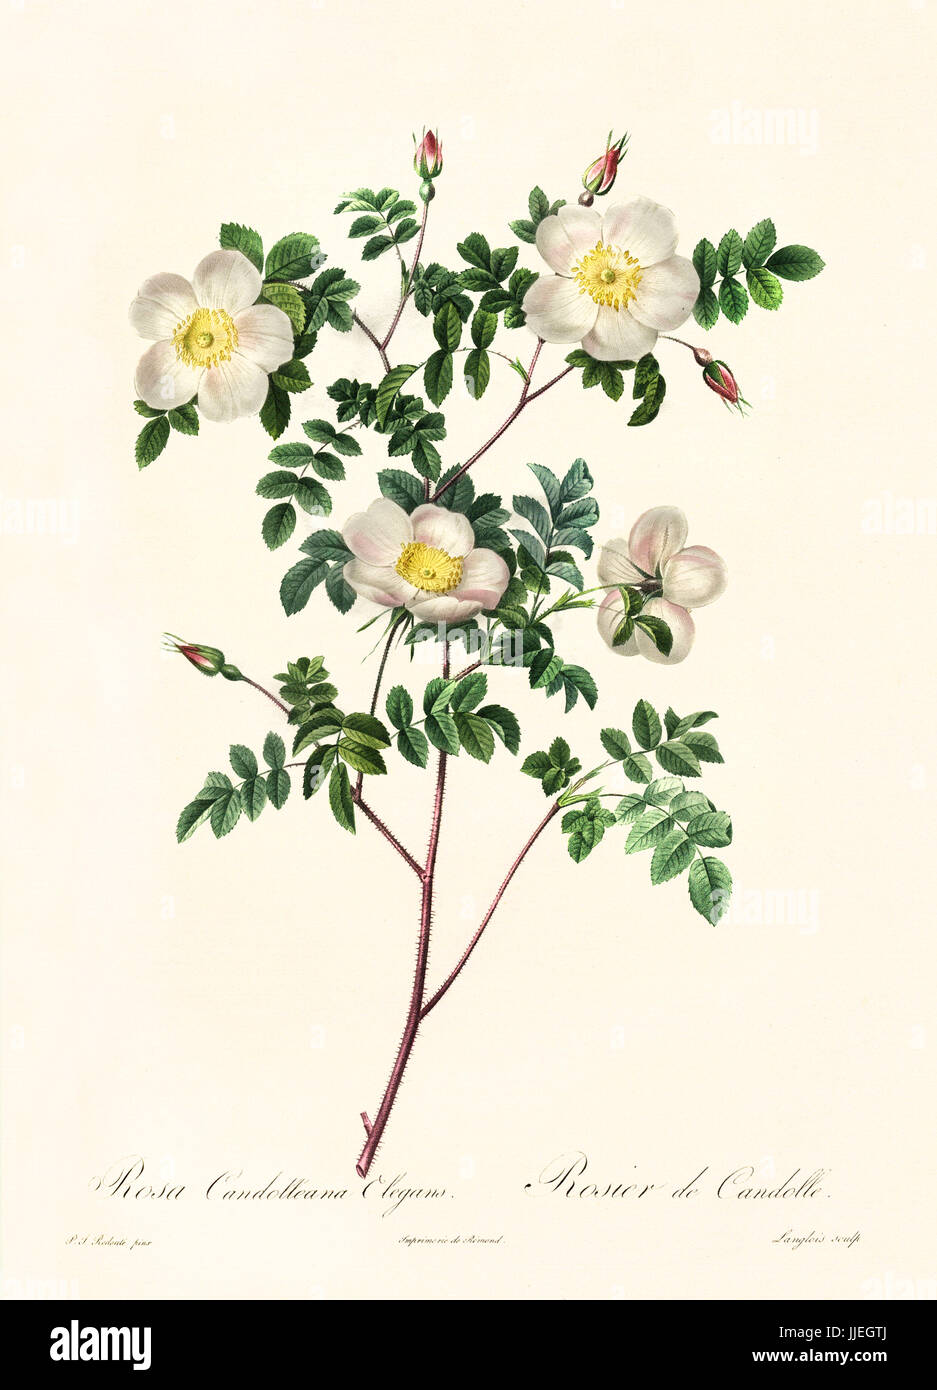 Vecchia illustrazione di Rosa candolleana elegans. Creato da P. R. Redoute, pubblicato su Les Roses, Imp. Firmin Didot, Parigi, 1817-24 Foto Stock